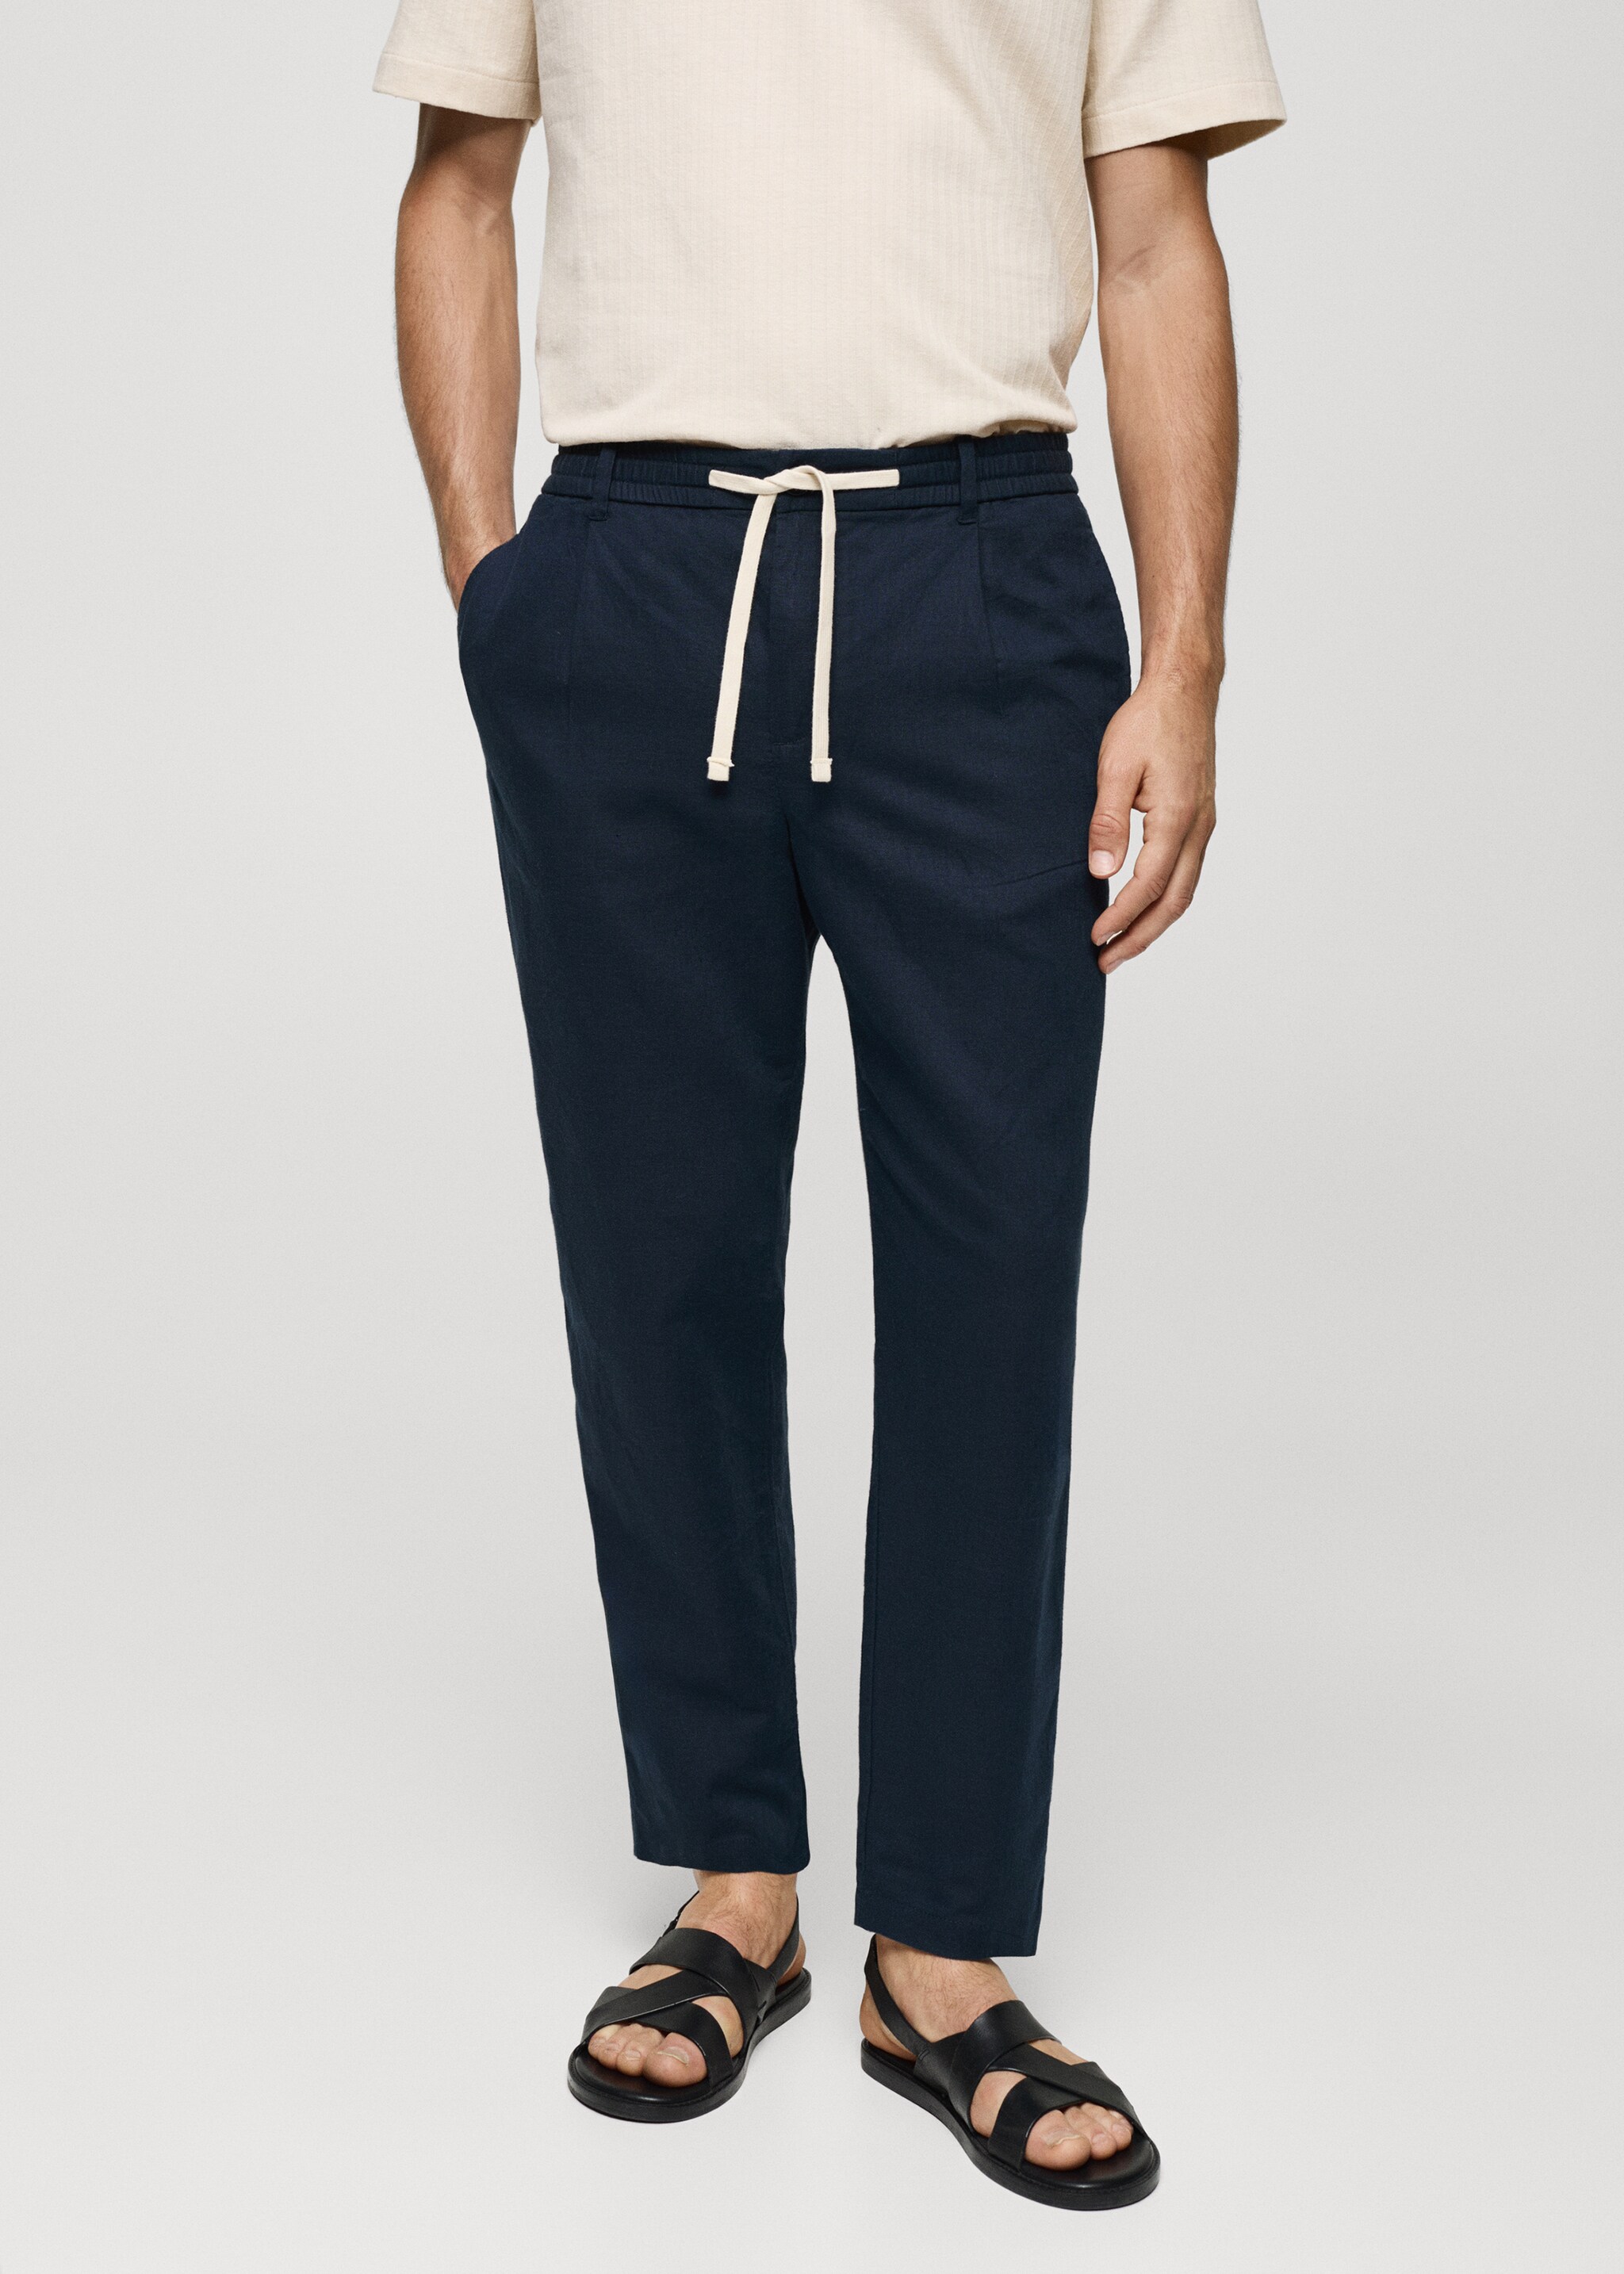 Pantalón slim fit lino cordón - Plano medio